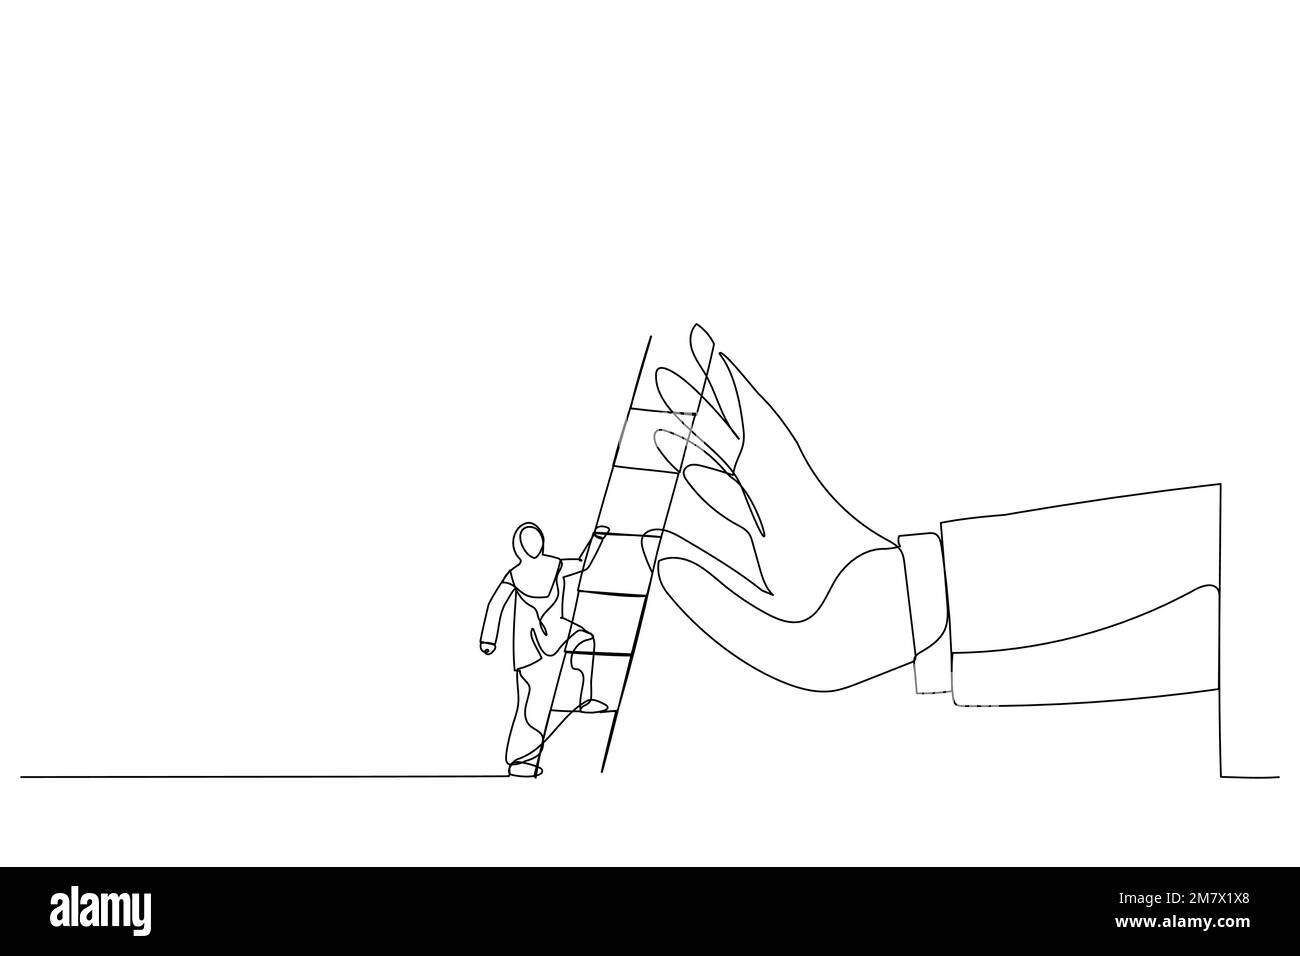 Disegno di una donna d'affari araba in procinto di salire la scala per superare la mano gigante fermandolo. Metafora per superare ostacolo di affari, barriera o diffic Illustrazione Vettoriale